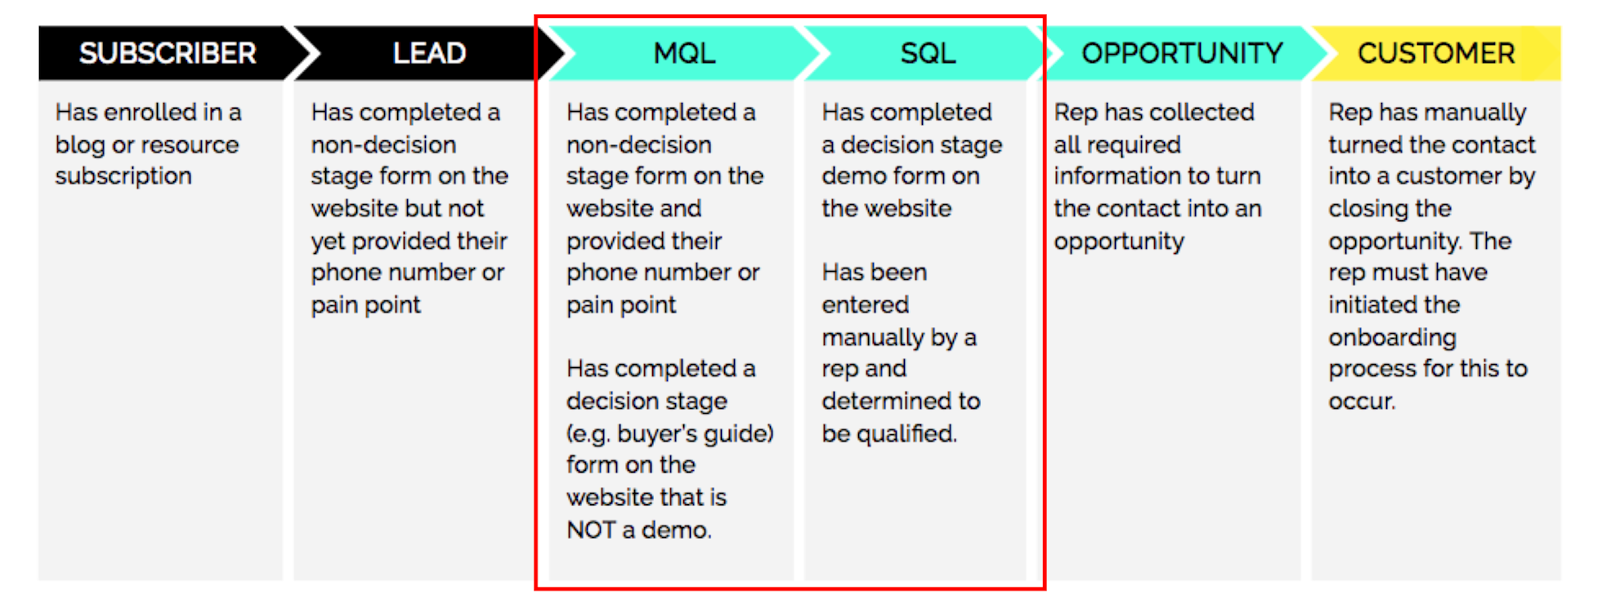 MQL vs SQL - detailed description of funnel positioning